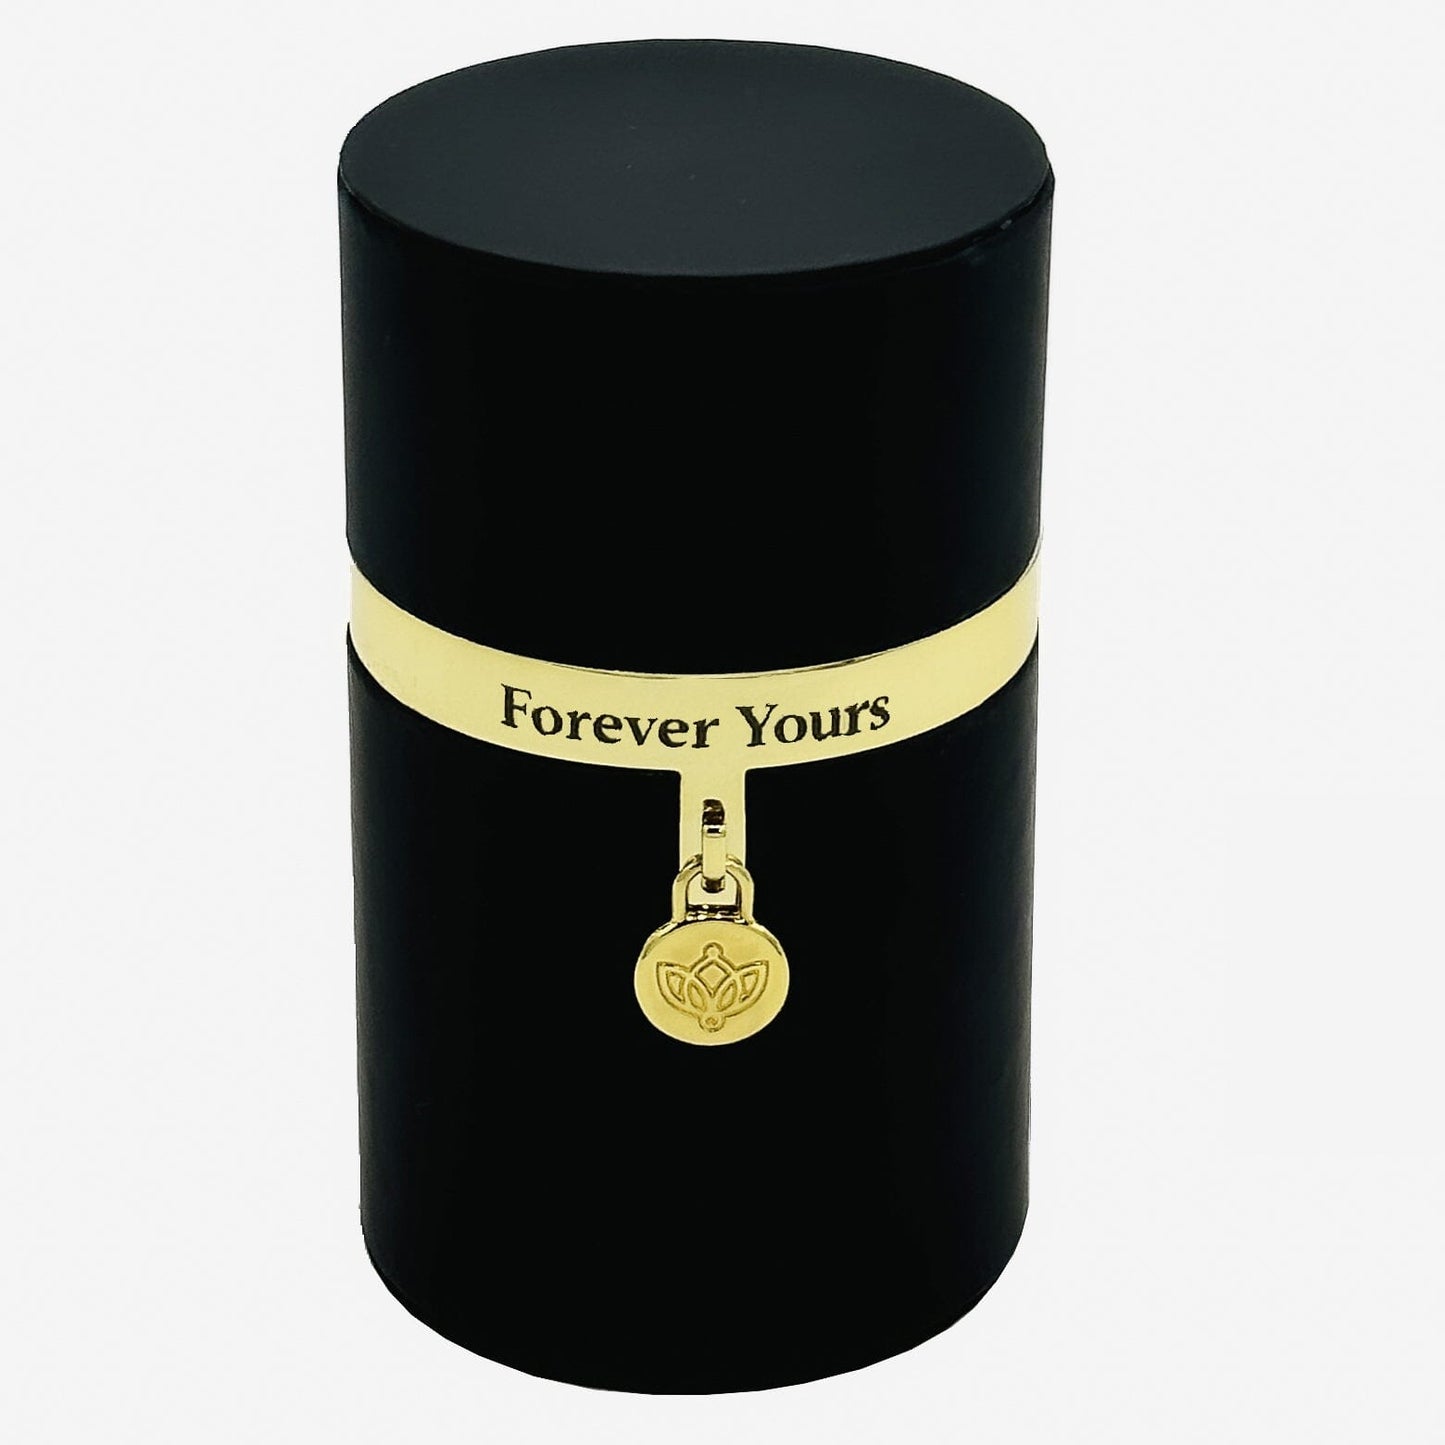 One in a Million™ Round Černá Box | Forever Yours | Červená růže